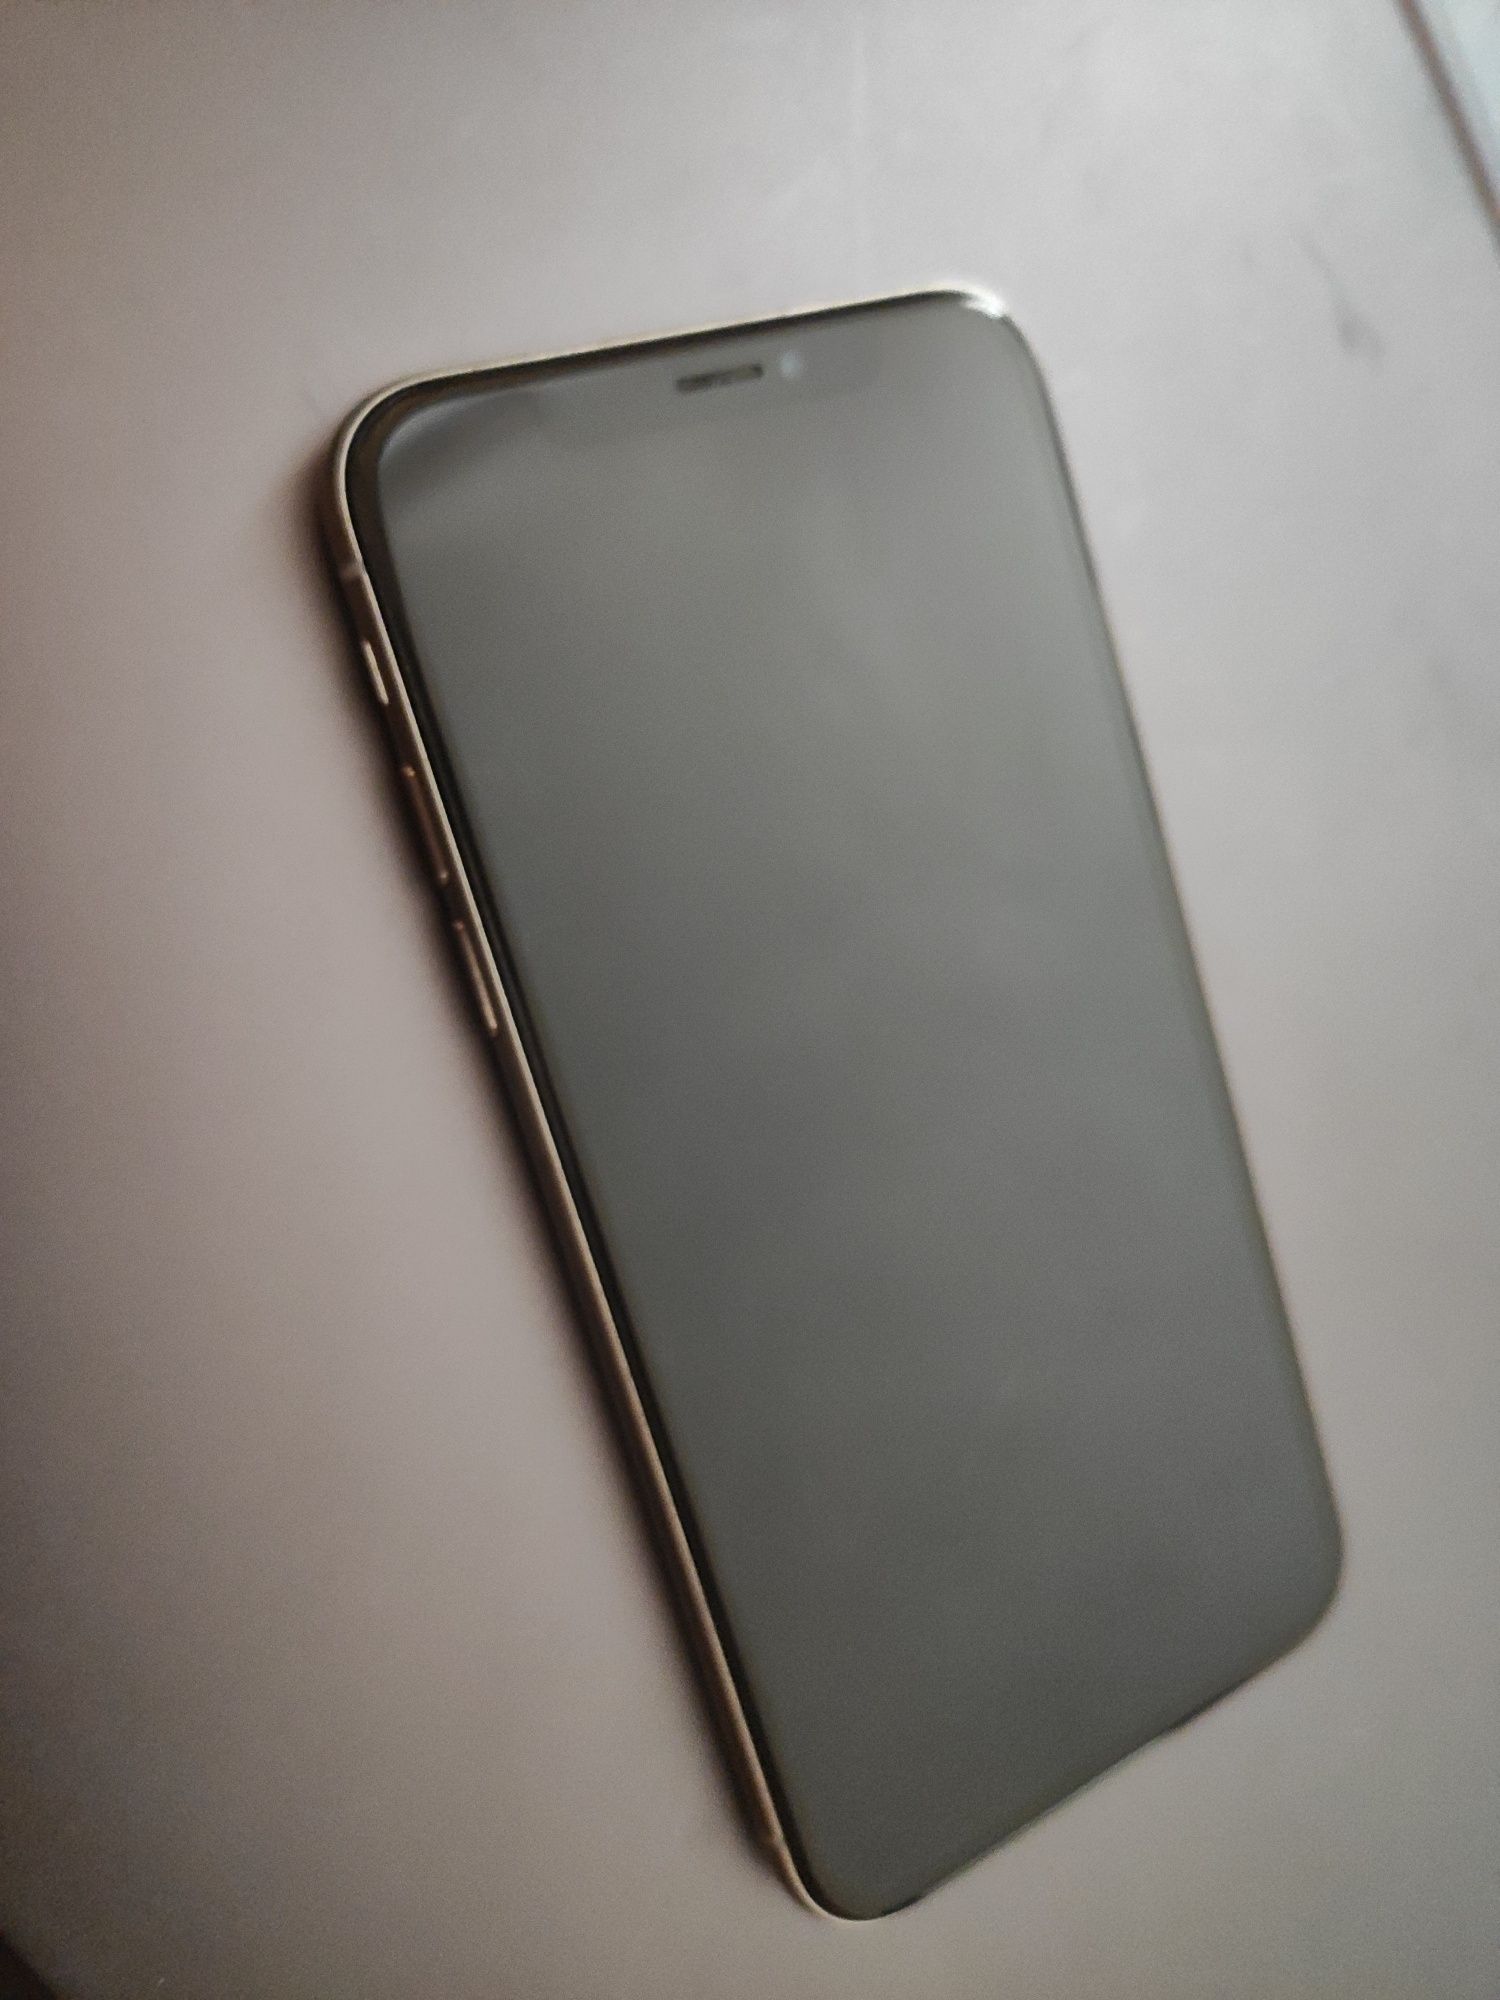 Iphone X 64 gb neverlock White